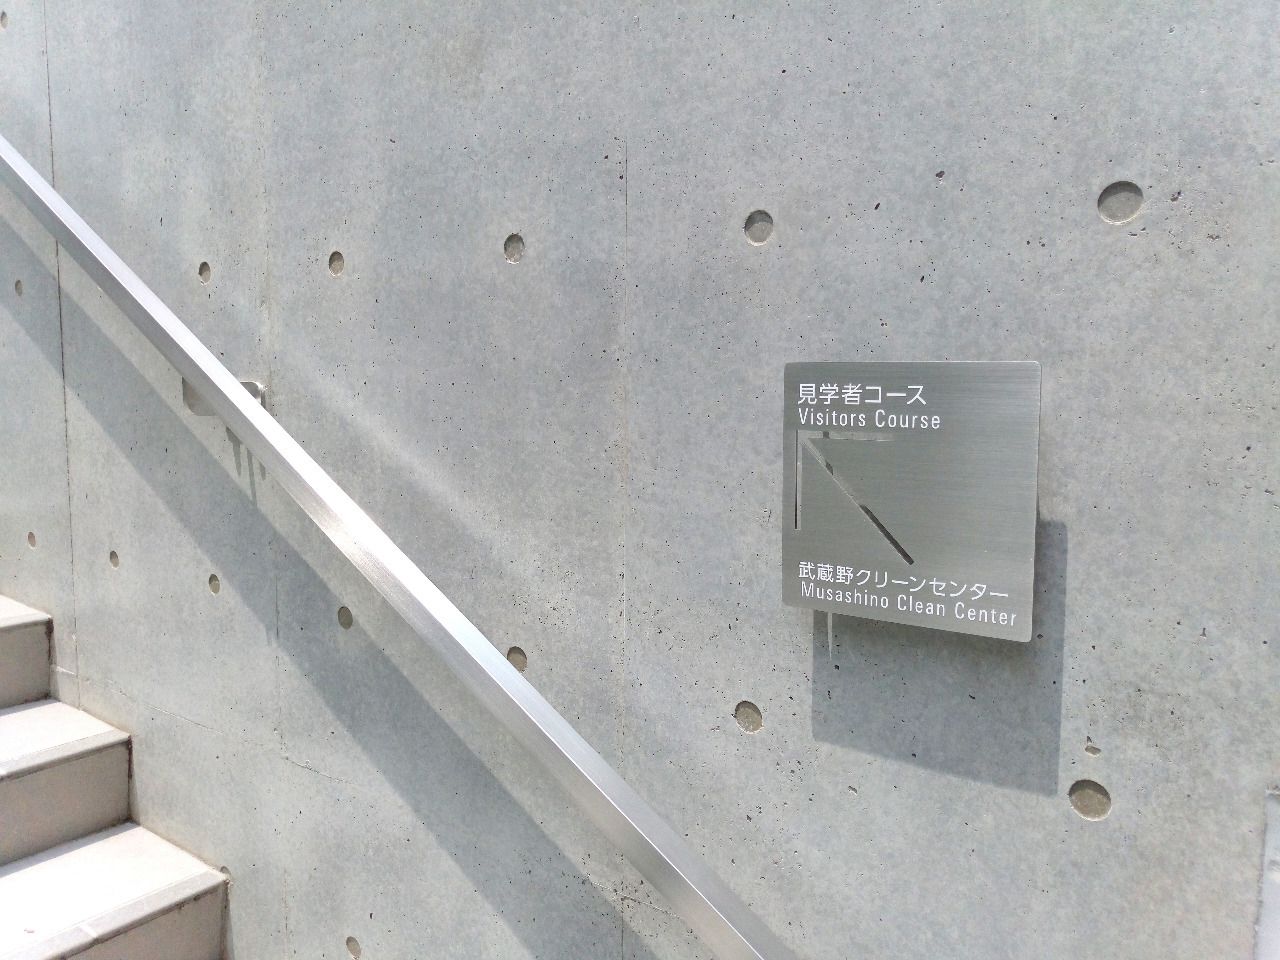 武蔵野市役所側の入口の下が駐輪場